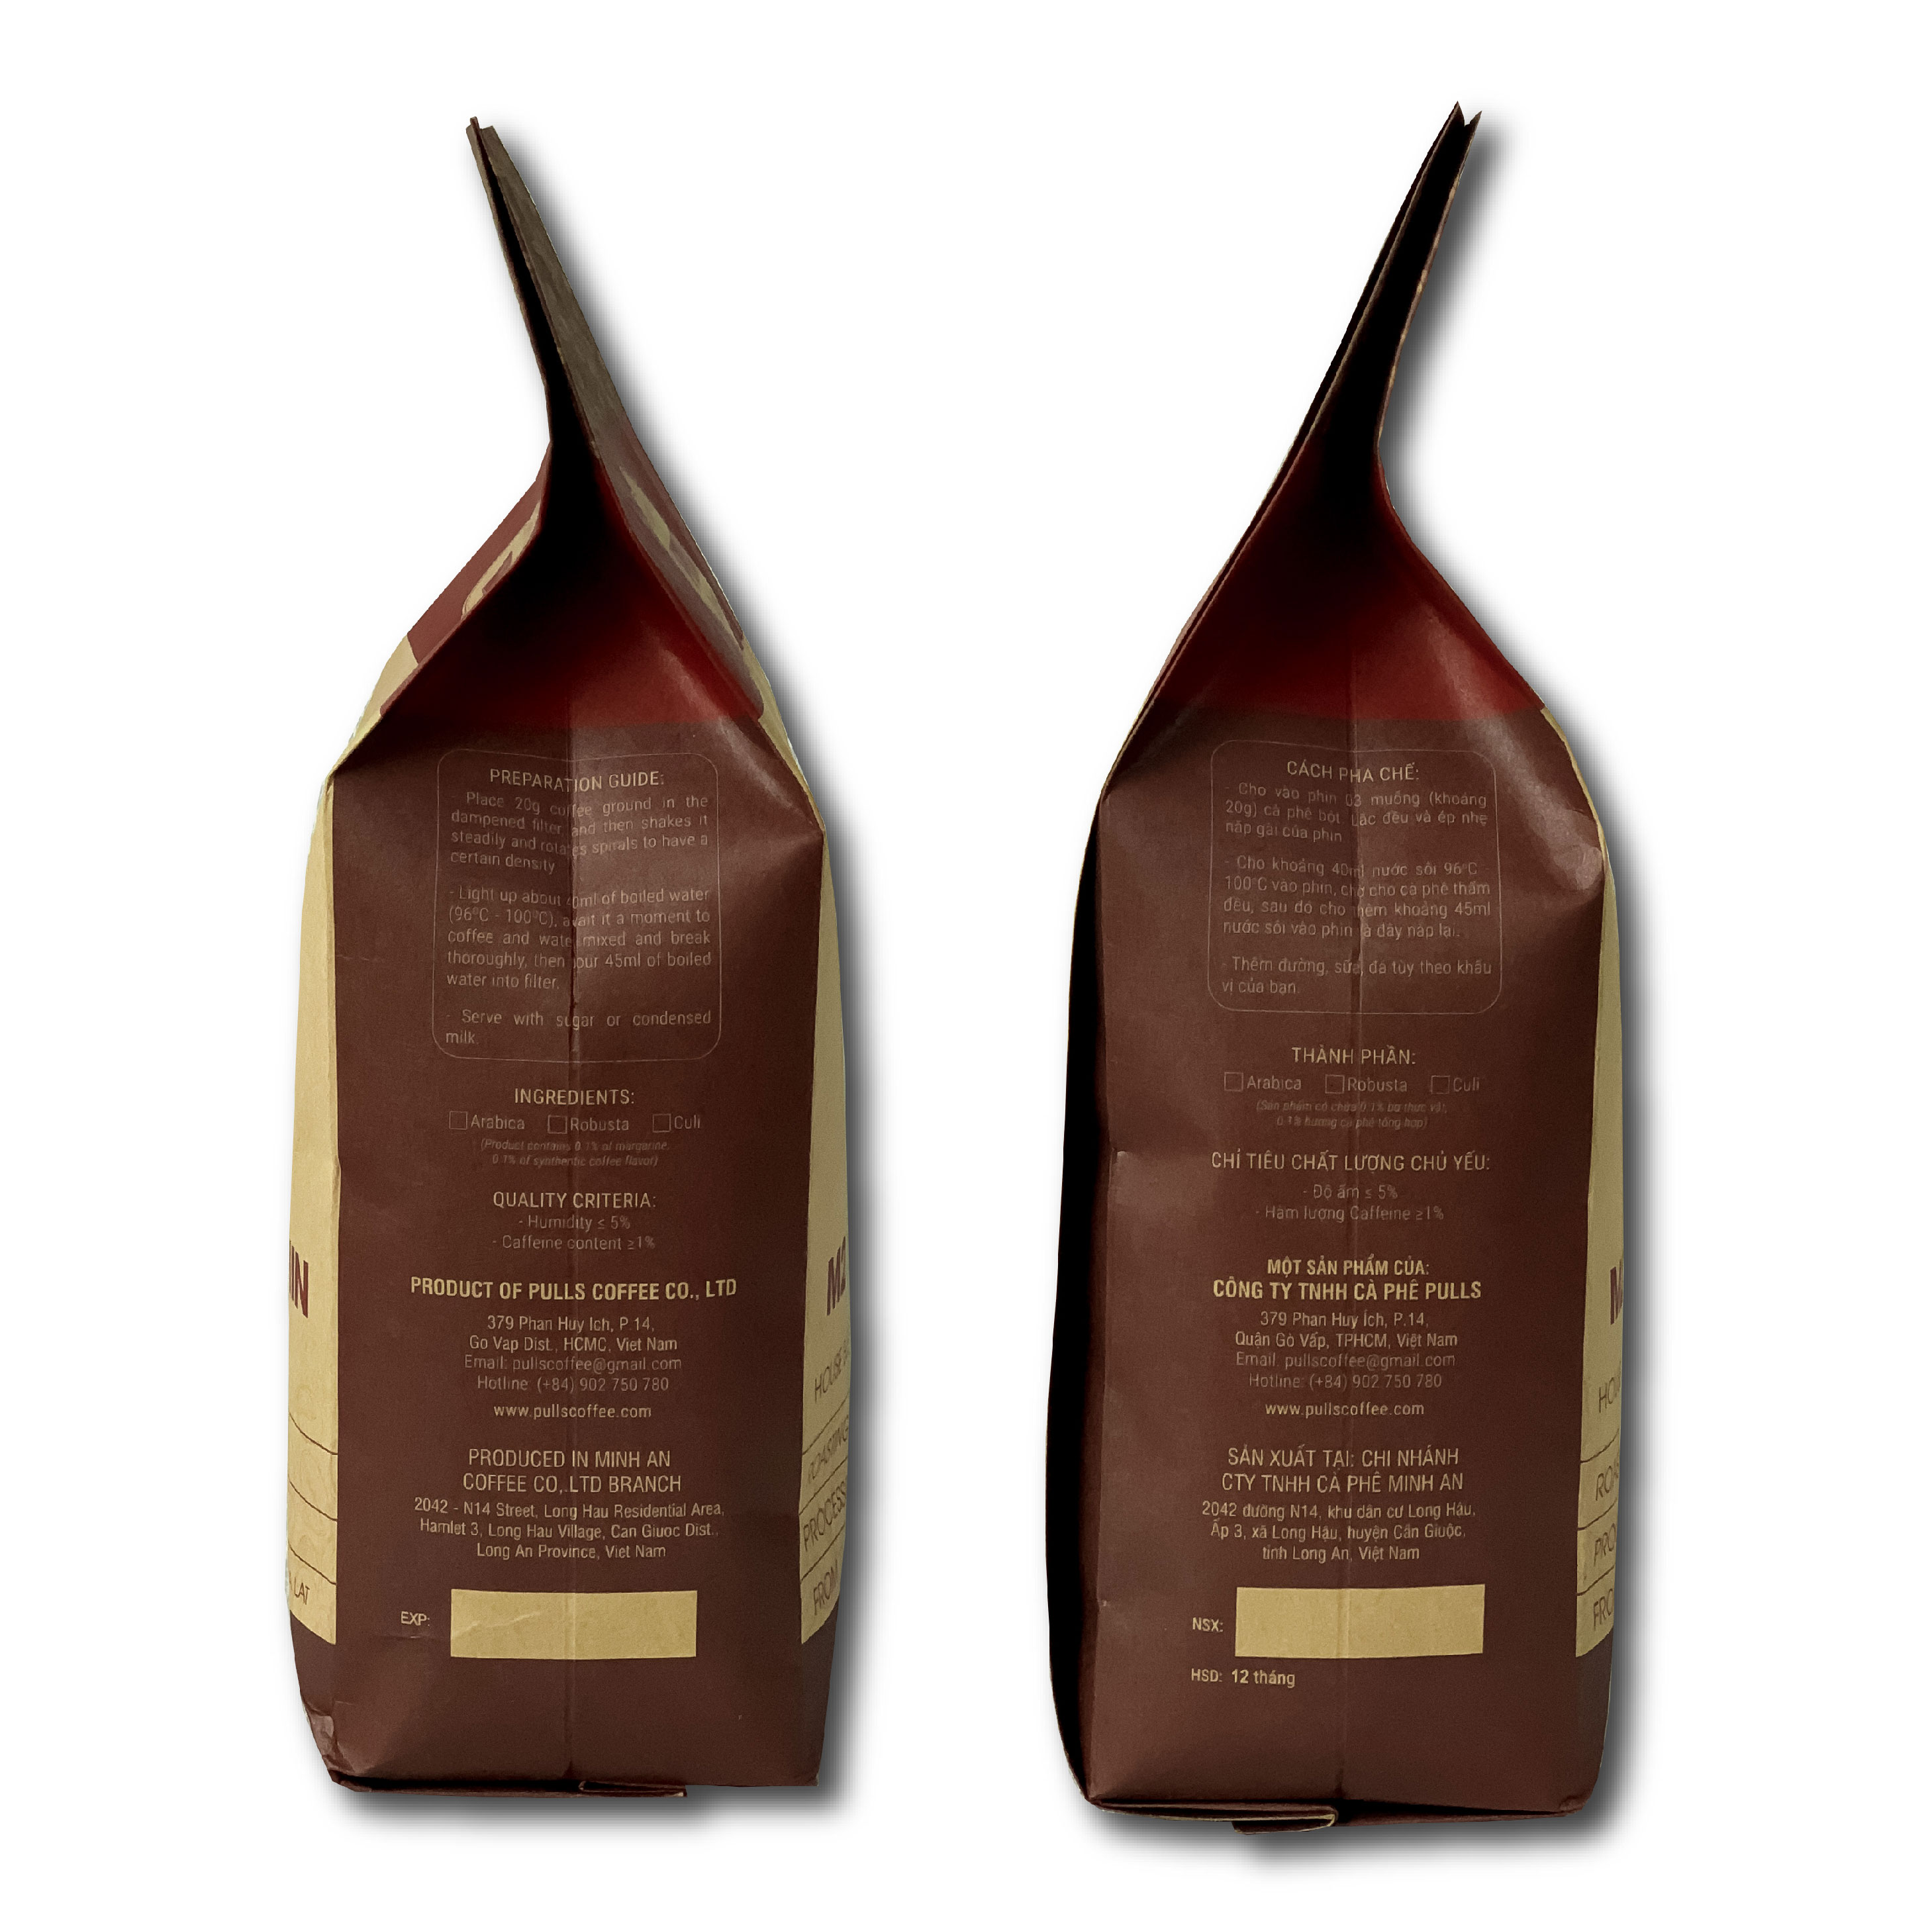 Cà phê pha phin nguyên chất Blend M2 thượng hạng rang mộc theo phương pháp Honey từ Pulls Coffee,- gói 250g/500g